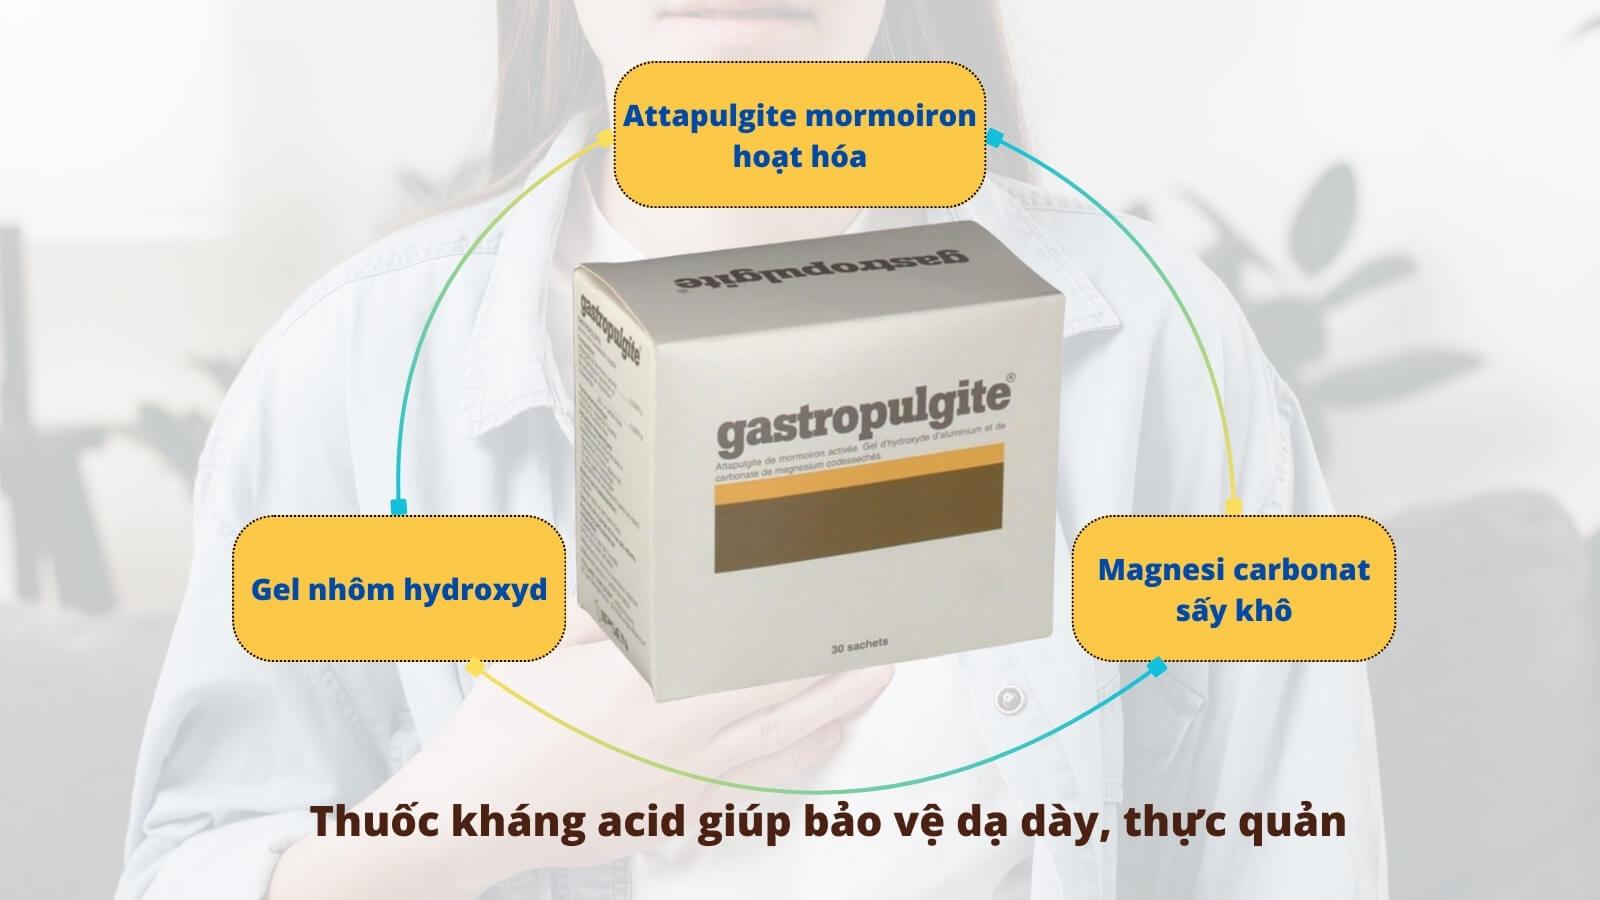 Gastropulgite là thuốc kháng acid giúp bảo vệ dạ dày, thực quản 